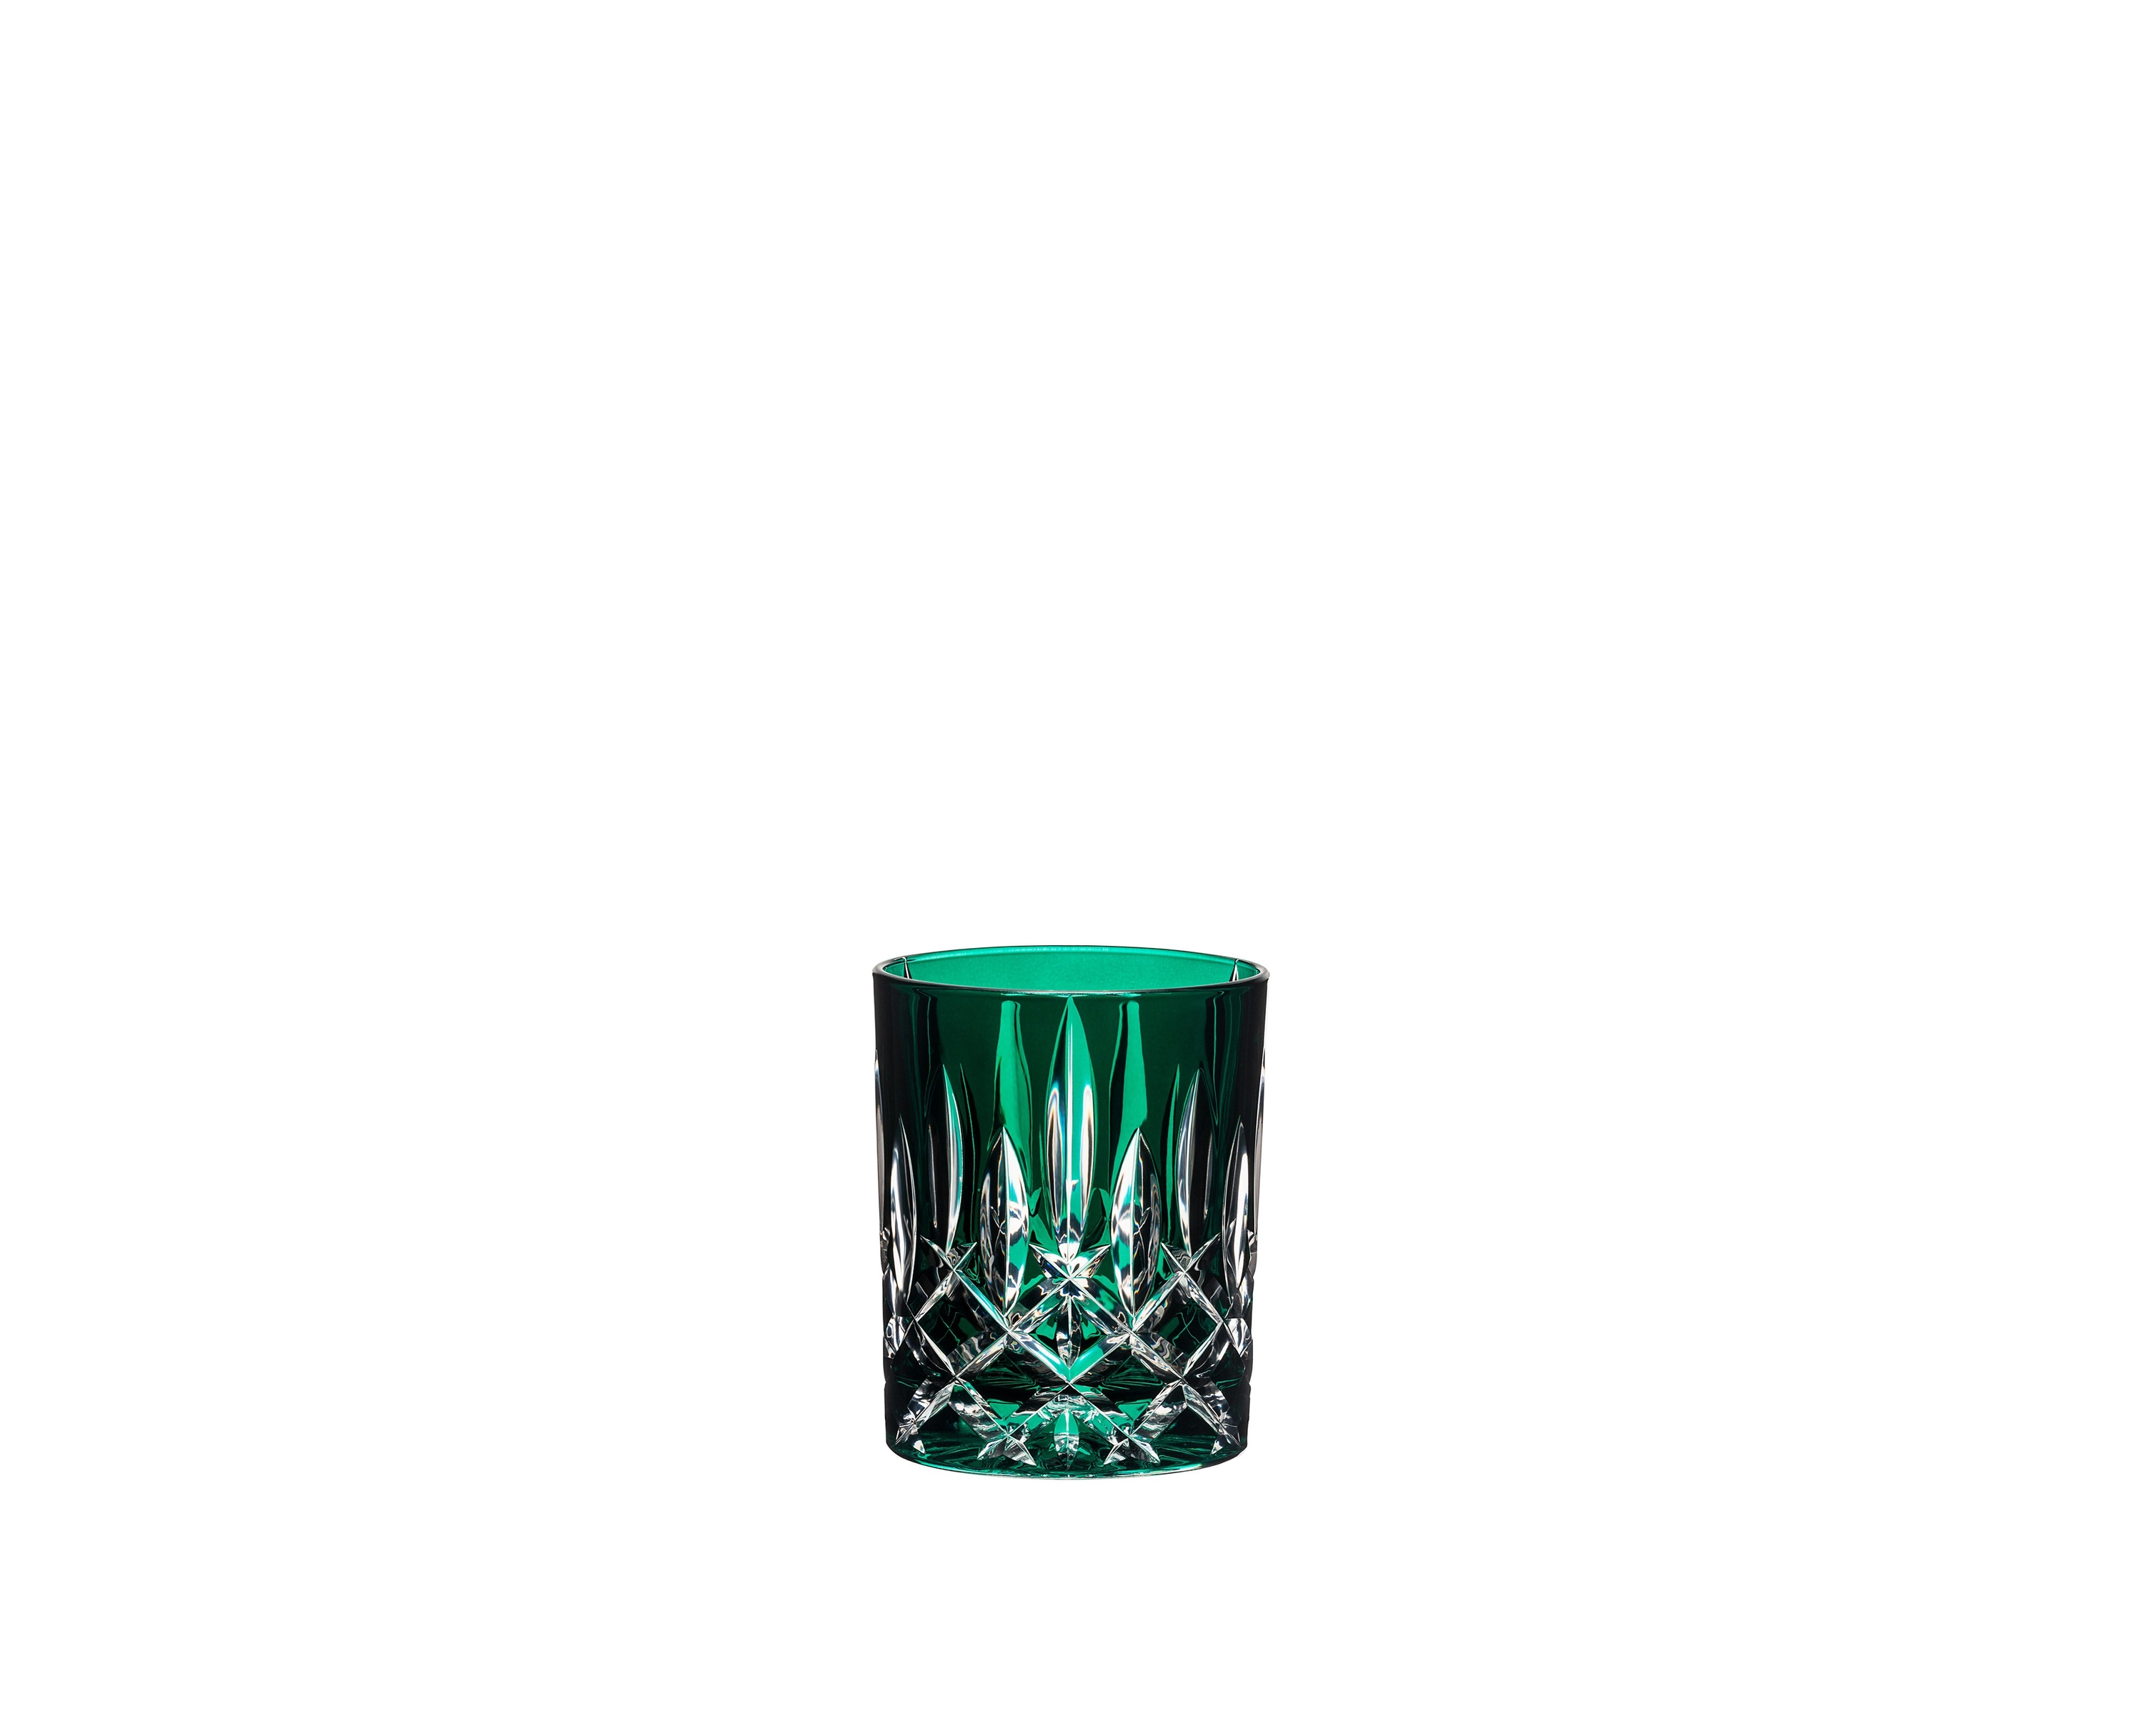 Riedel Laudon Bicchiere Tumbler Verde, Set 4 pezzi